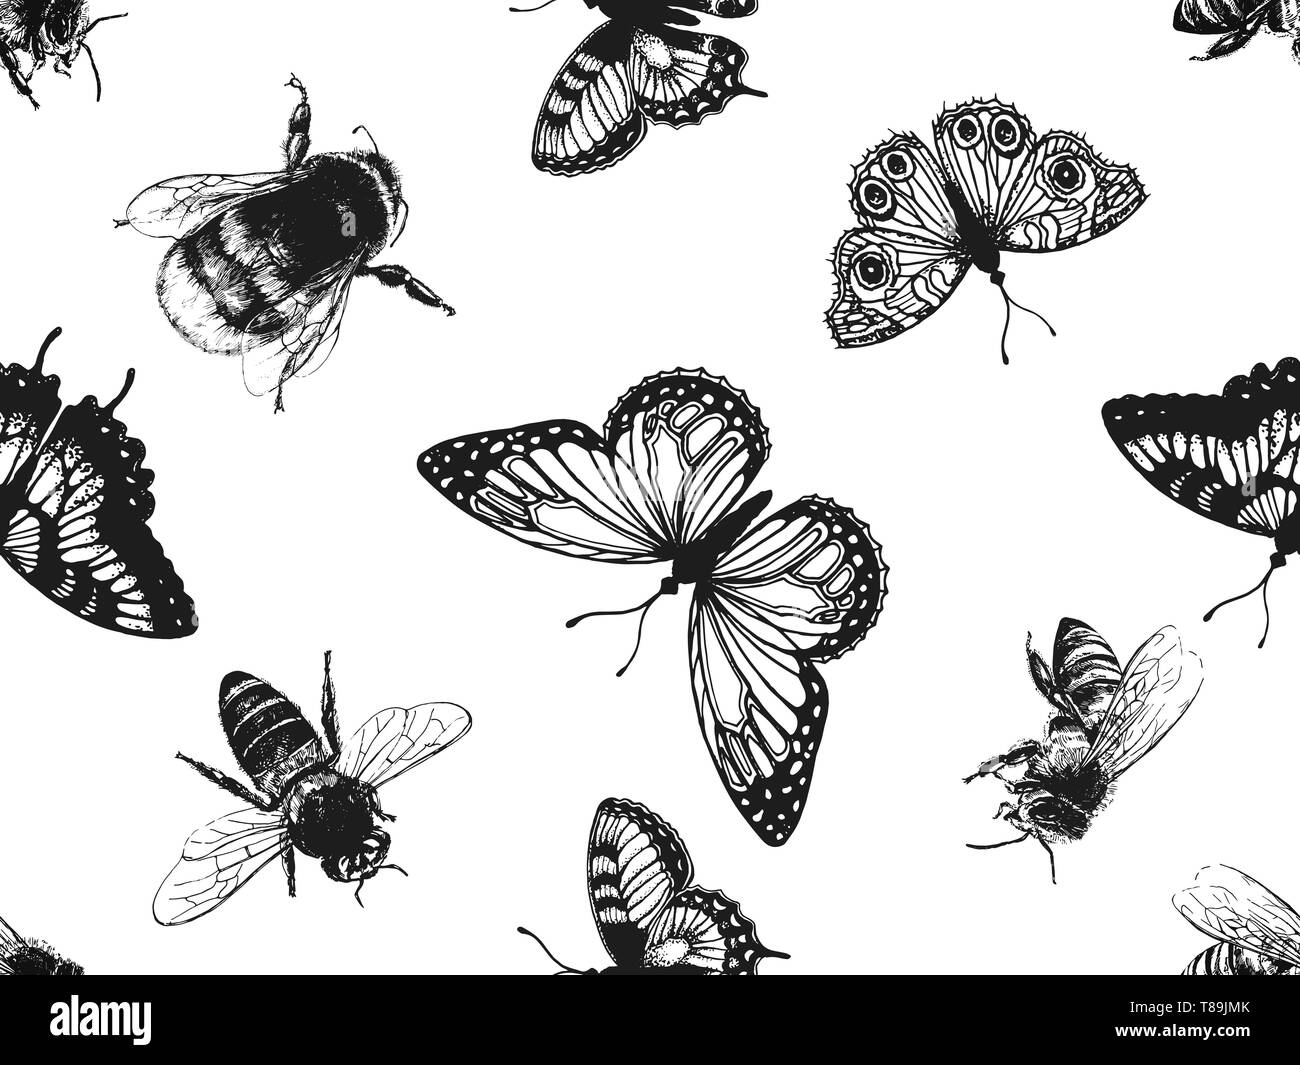 Nahtlose Muster von Hand gezeichnete Skizze stil Insekten und Blumen auf weißem Hintergrund. Vector Illustration. Stock Vektor